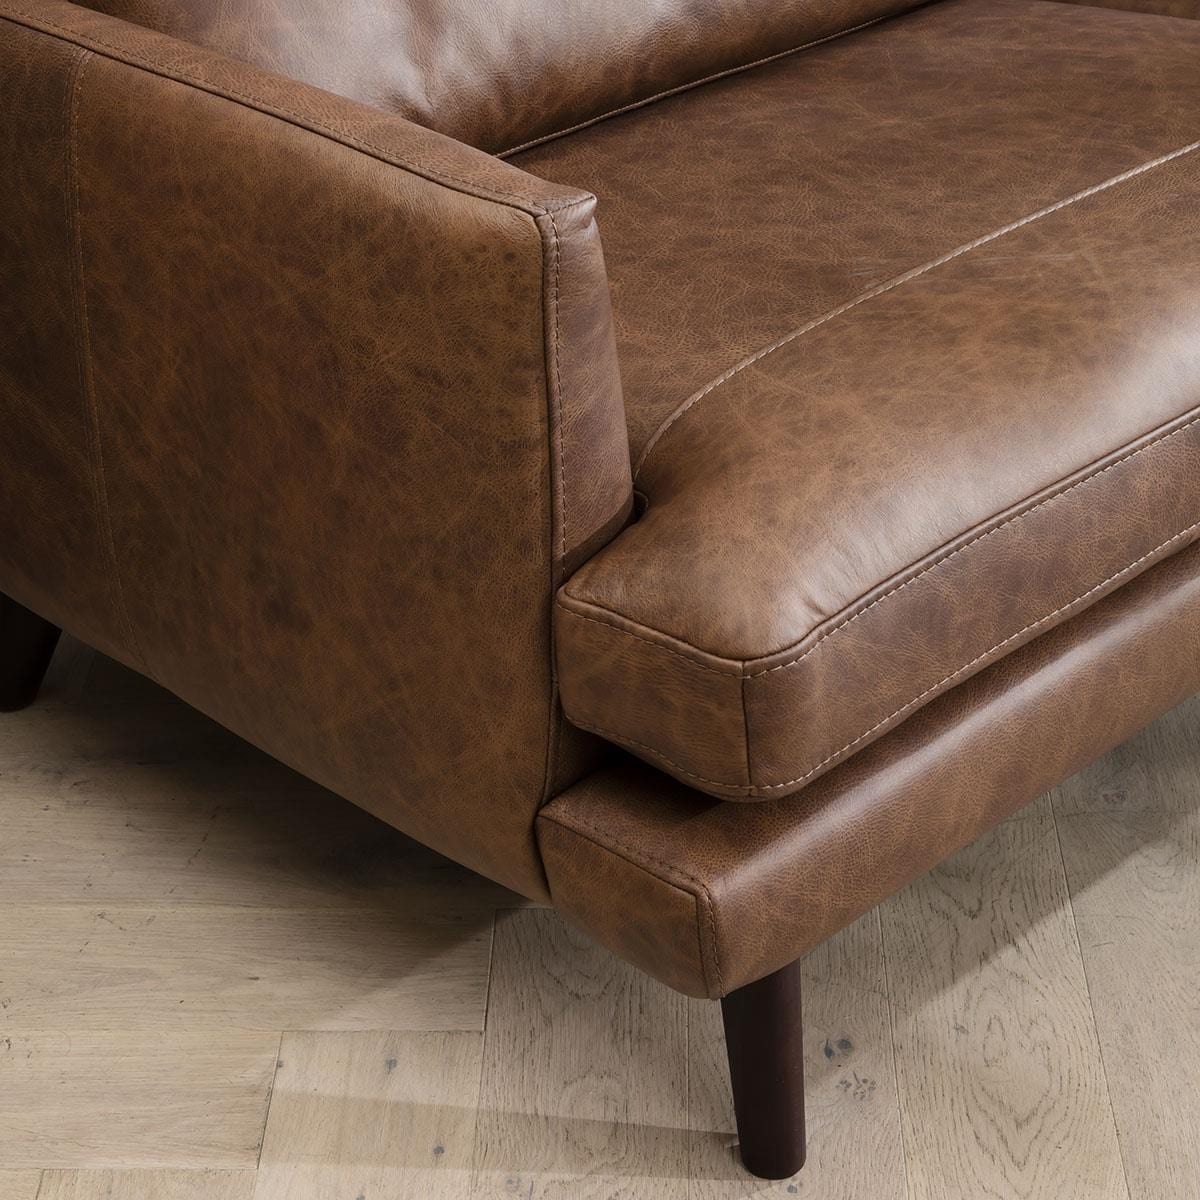 Quatropi Quatropi 2 Seater Premium Leather Sofa - Real Leather Options - 170cm